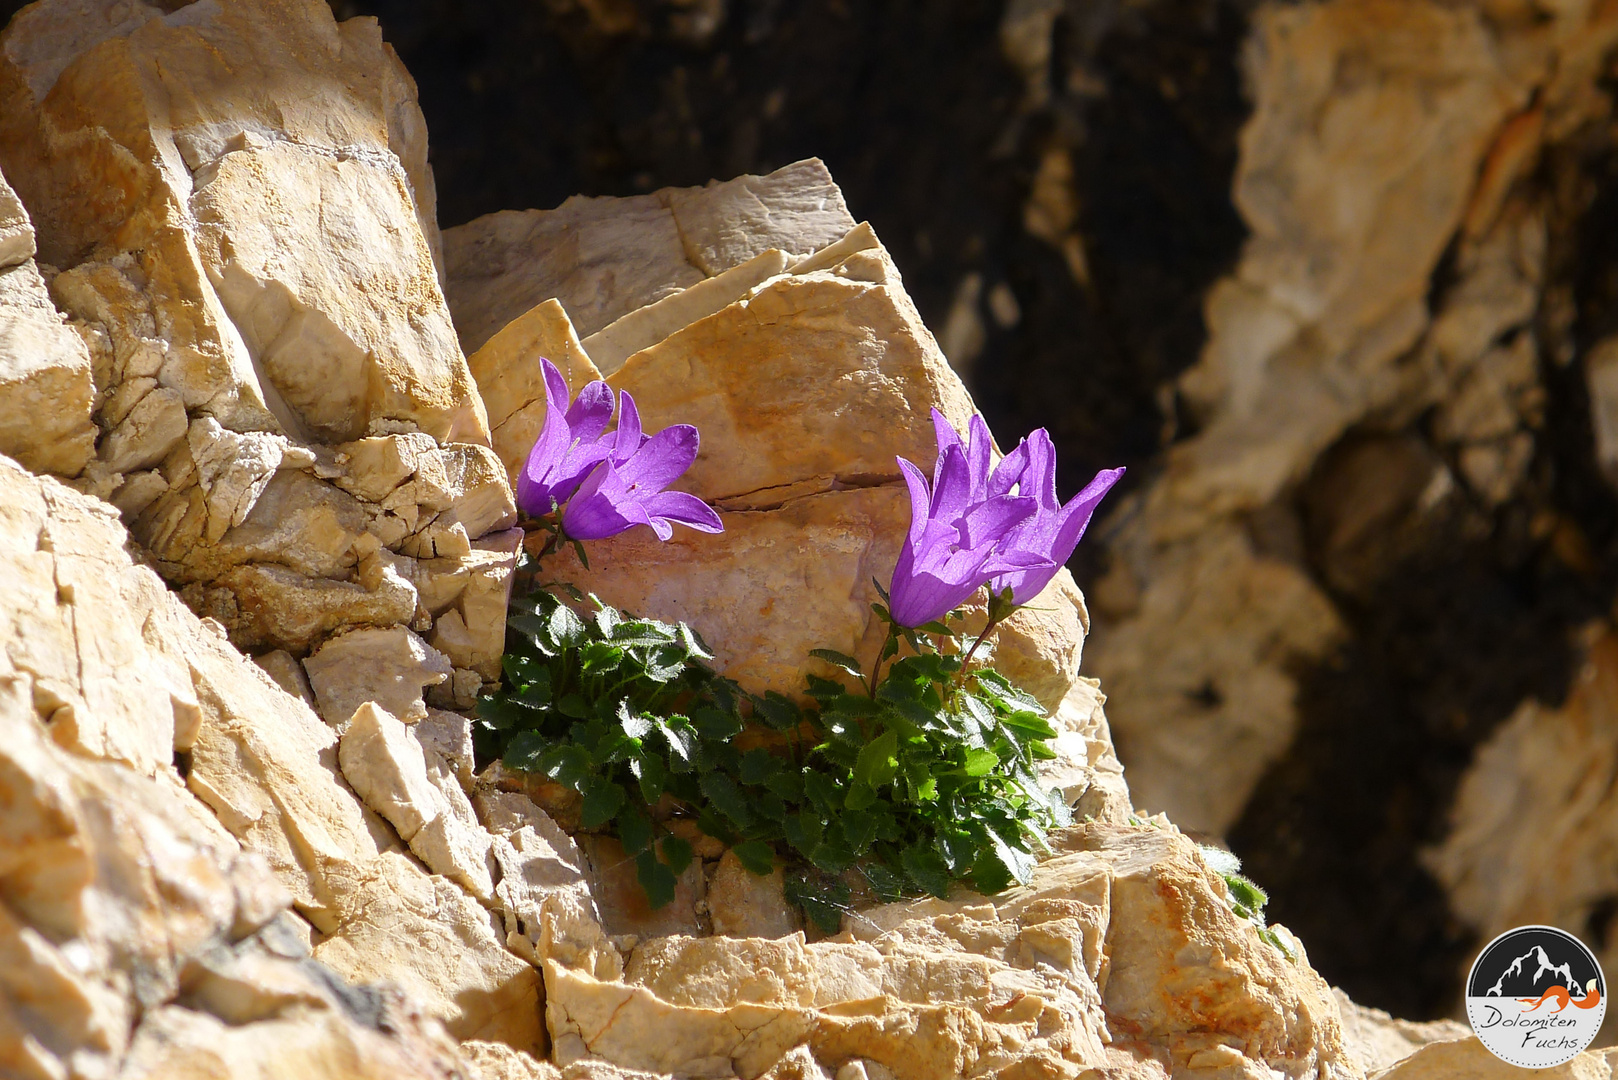 Dolomites-a marvellous endemic flower